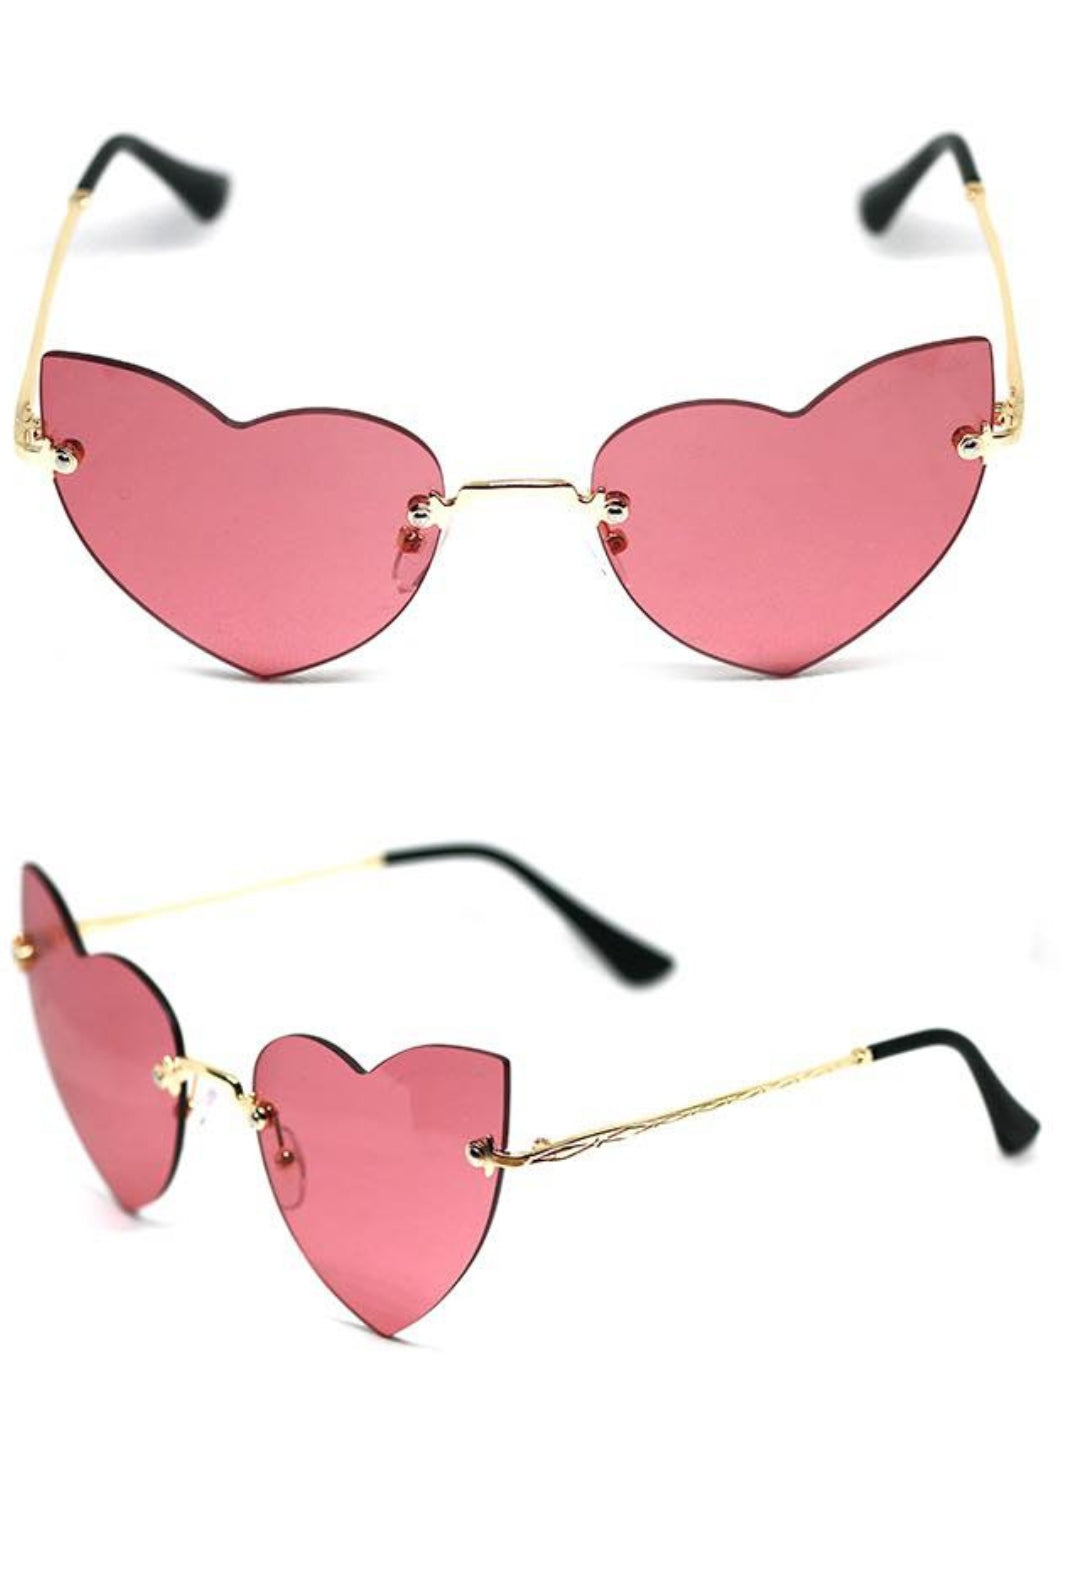 Cat Eye Frameless Love Glasses - Love Glasses Revolution